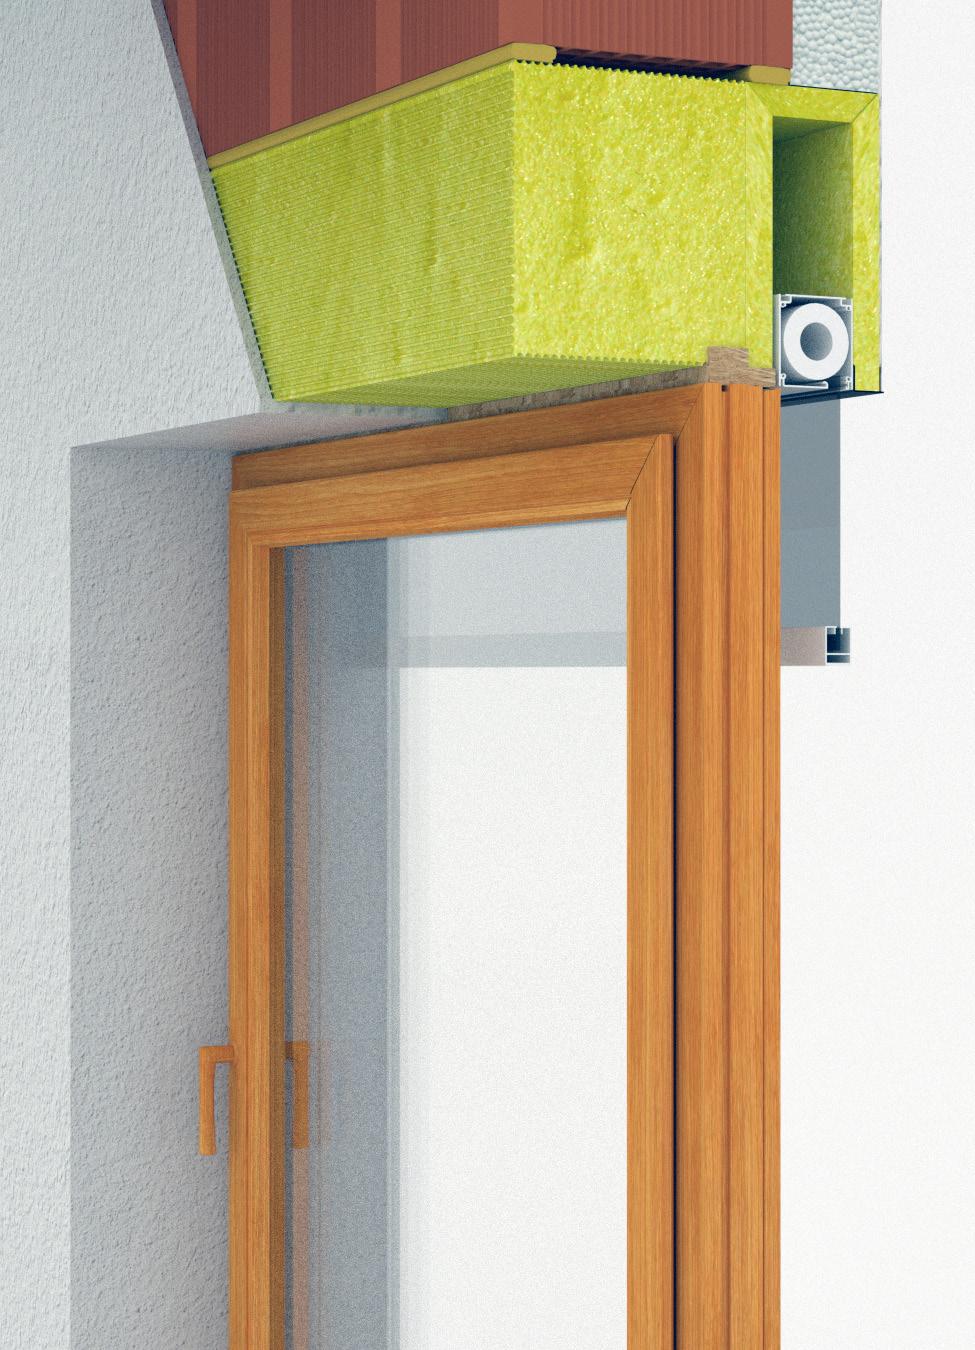 x Roverox è un elemento prefabbricato per la costruzione finita del vano porta e finestra, composto da un cassonetto a scomparsa per frangisole realizzato in poliuretano con rivestimento in Velo skin.